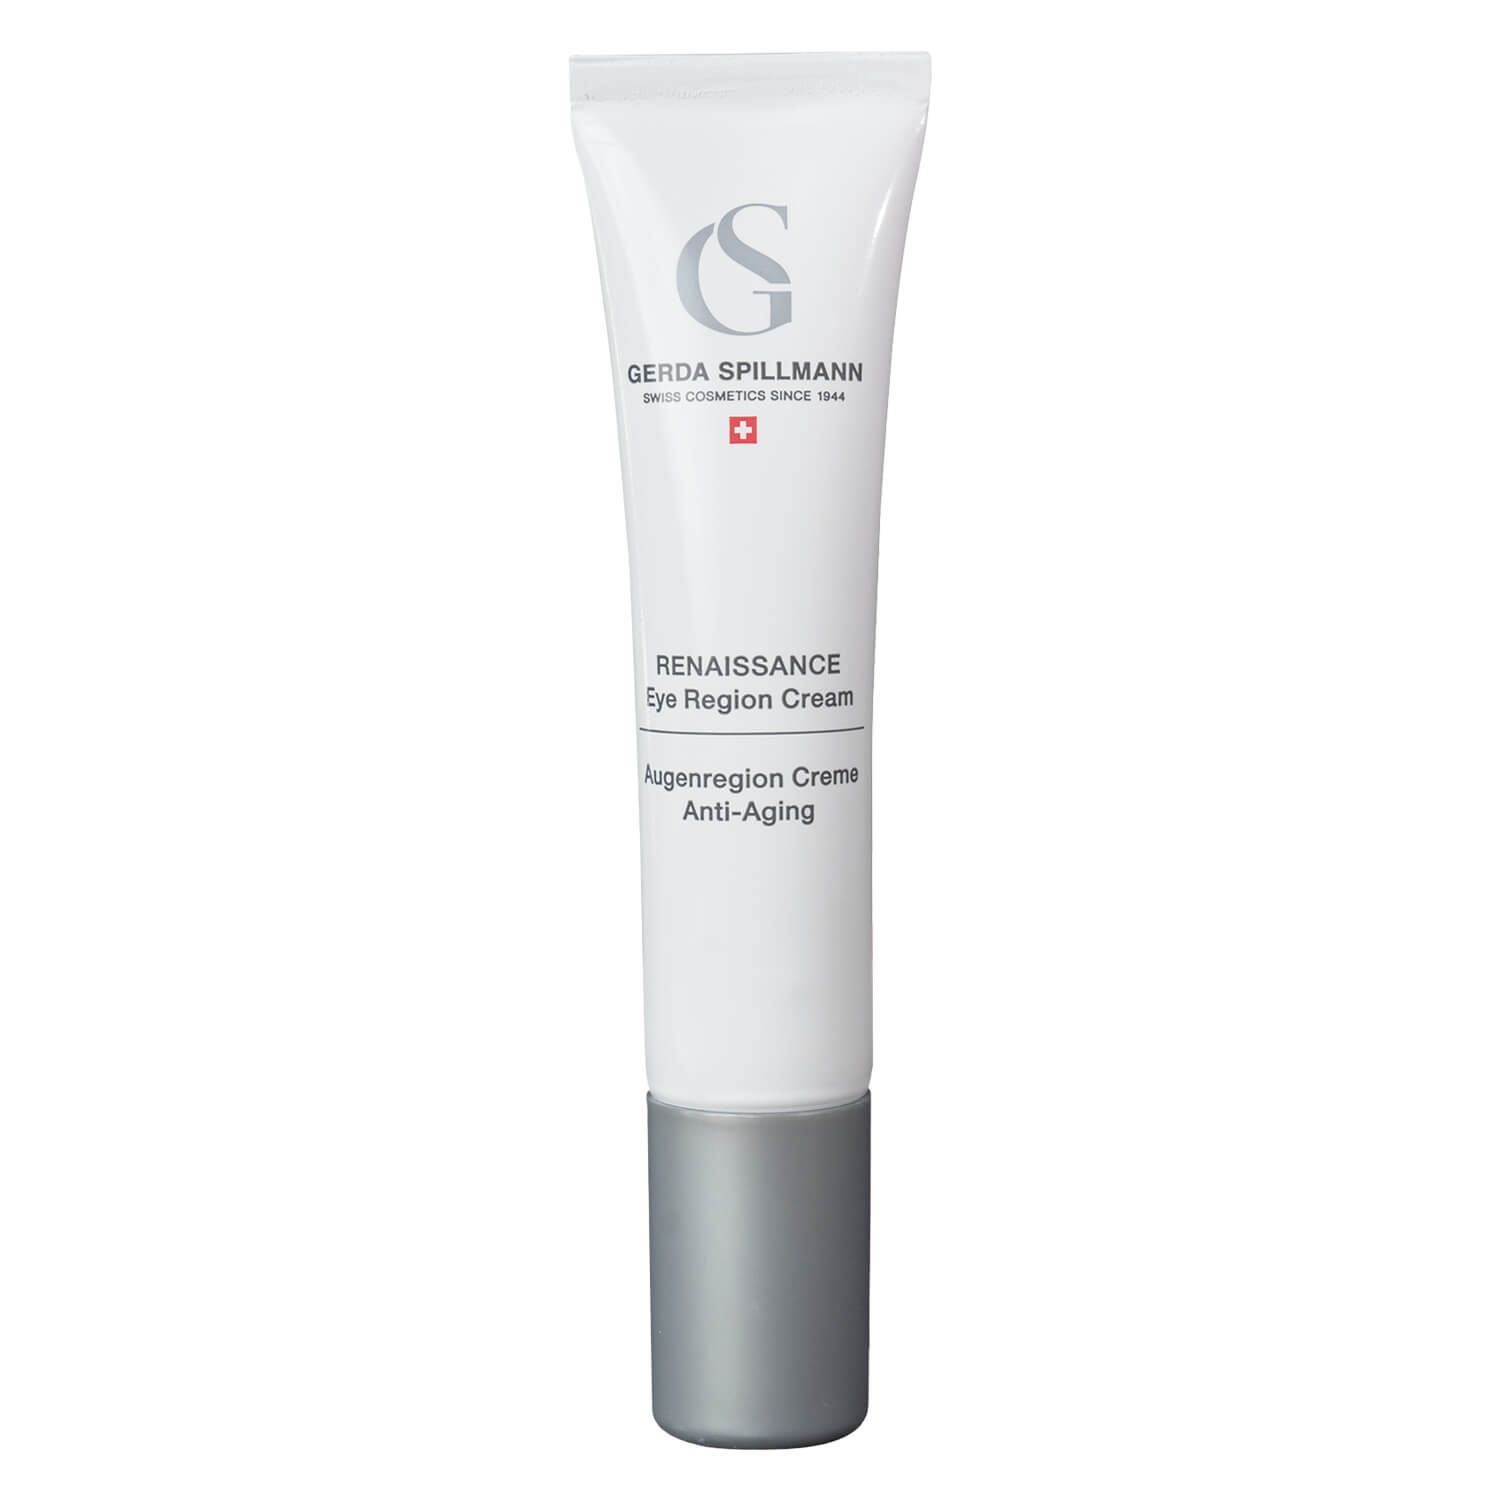 Produktbild von GS Skincare - Renaissance Eye Region Cream